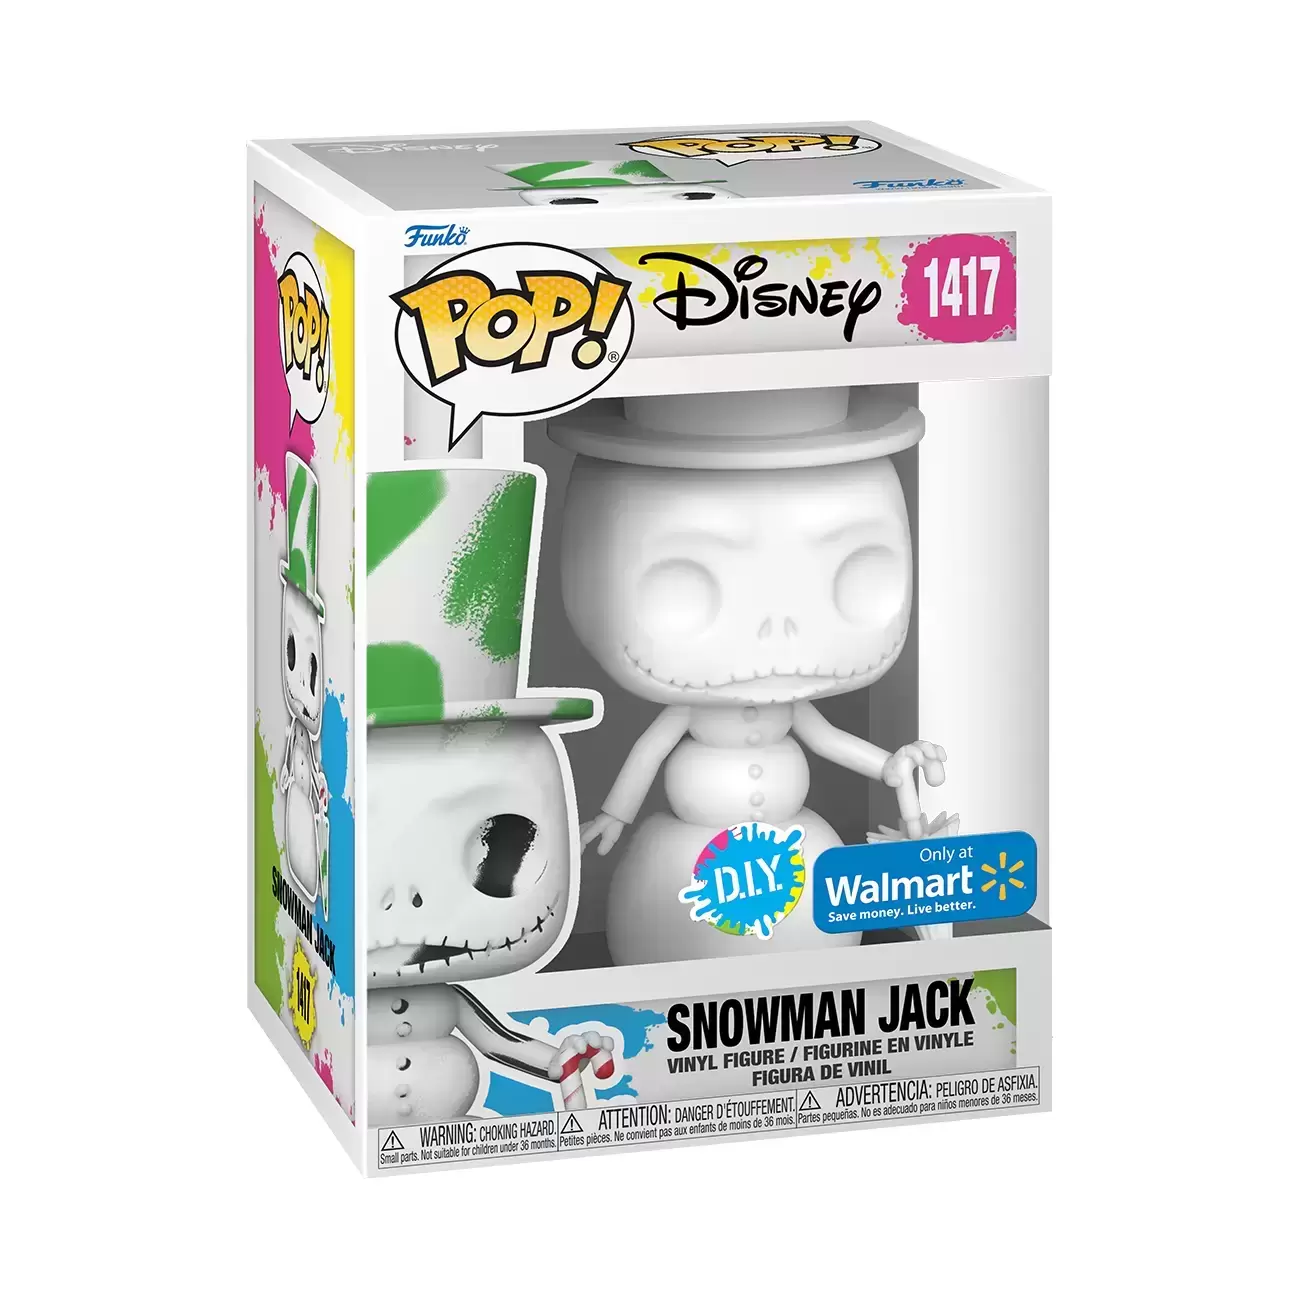 POP! Disney - Nightmare Before Christmas - Snowman Jack DIY